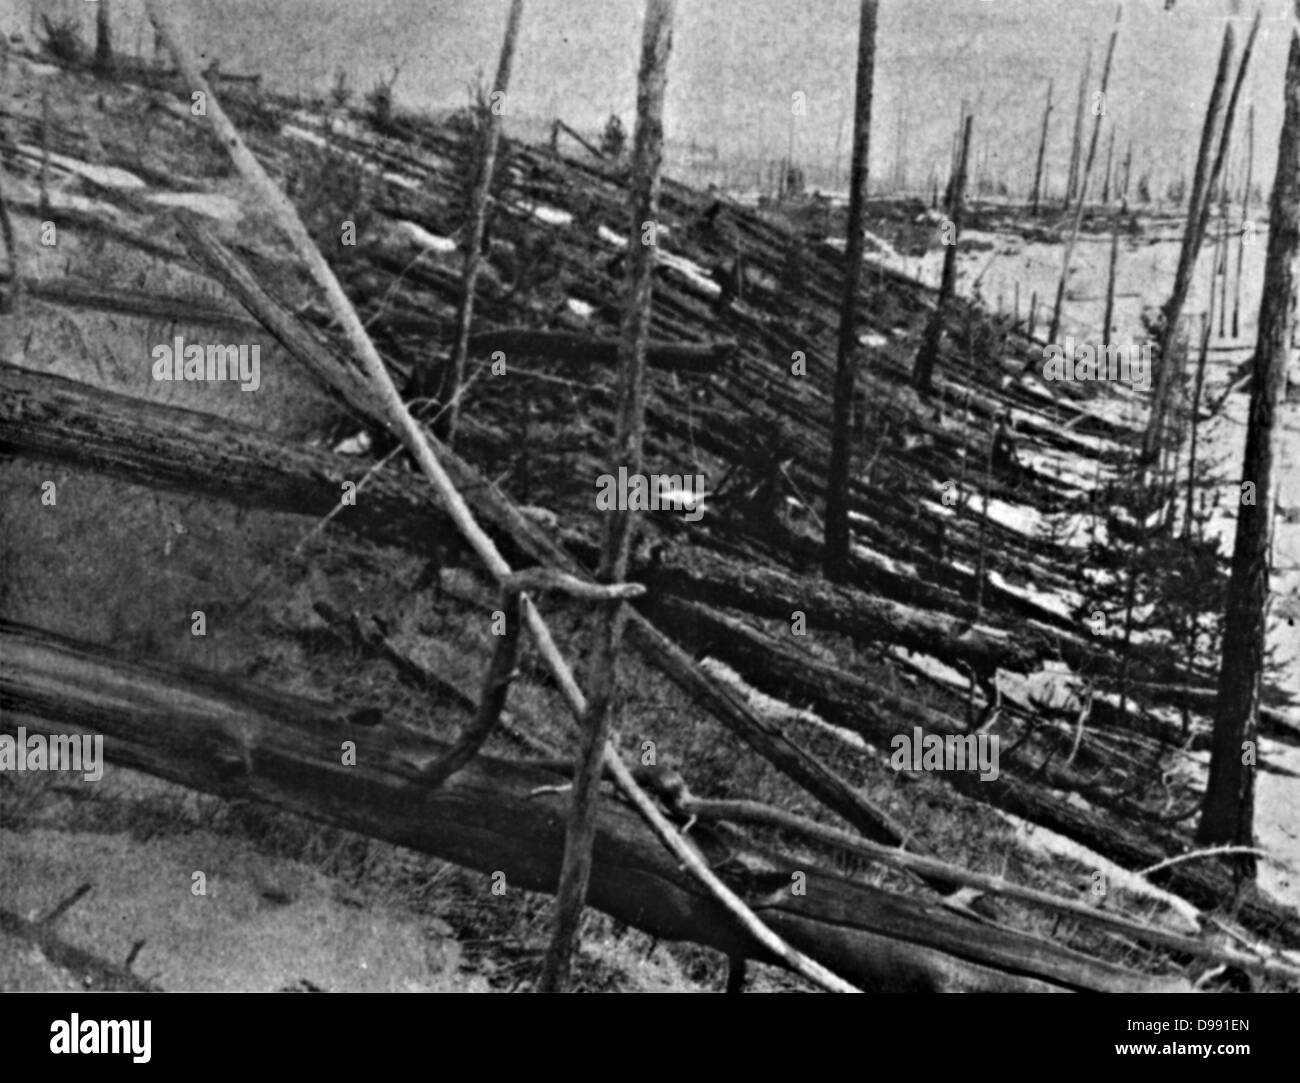 L'événement de la Toungouska Tunguska, ou explosion, 30 juin 1908, près de la rivière Tunguska, Podkamennaya, krai de Krasnoïarsk, en Russie. Cause contestée, mais généralement acceptée comme causé par une météorite. Détail de dynamité les arbres. Banque D'Images